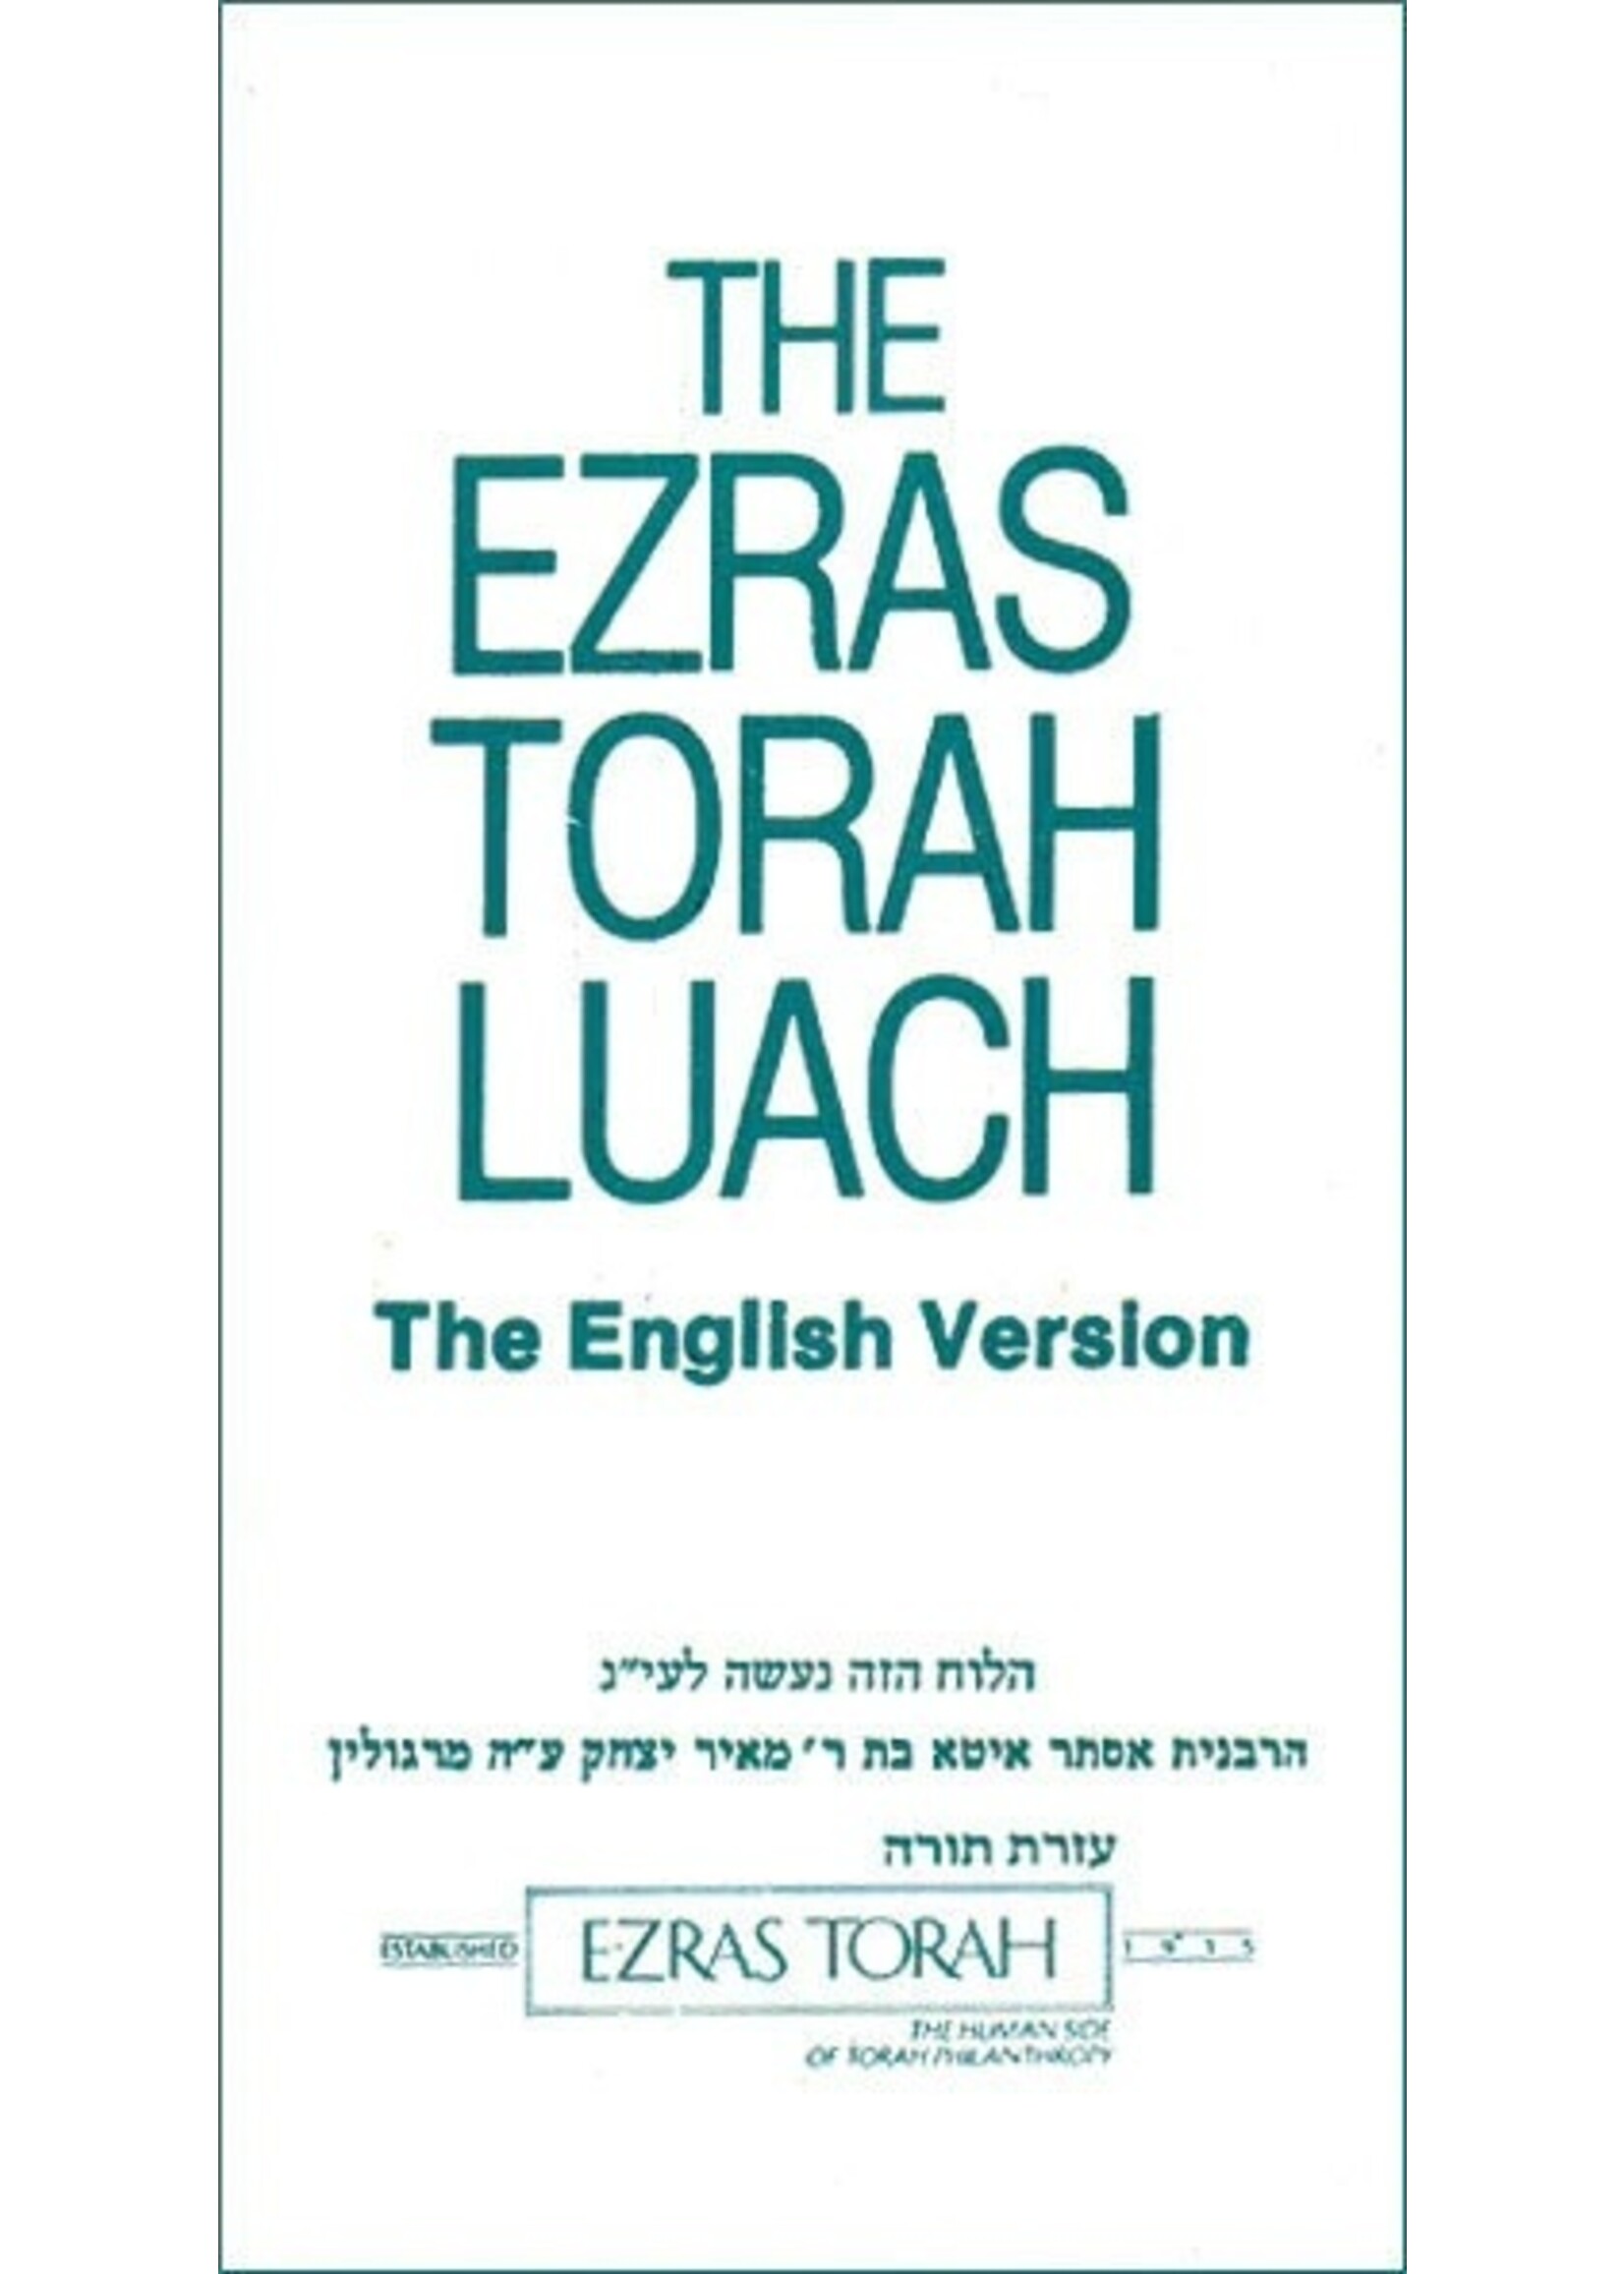 EZRAS TORAH LUACH P/S ENGLISH